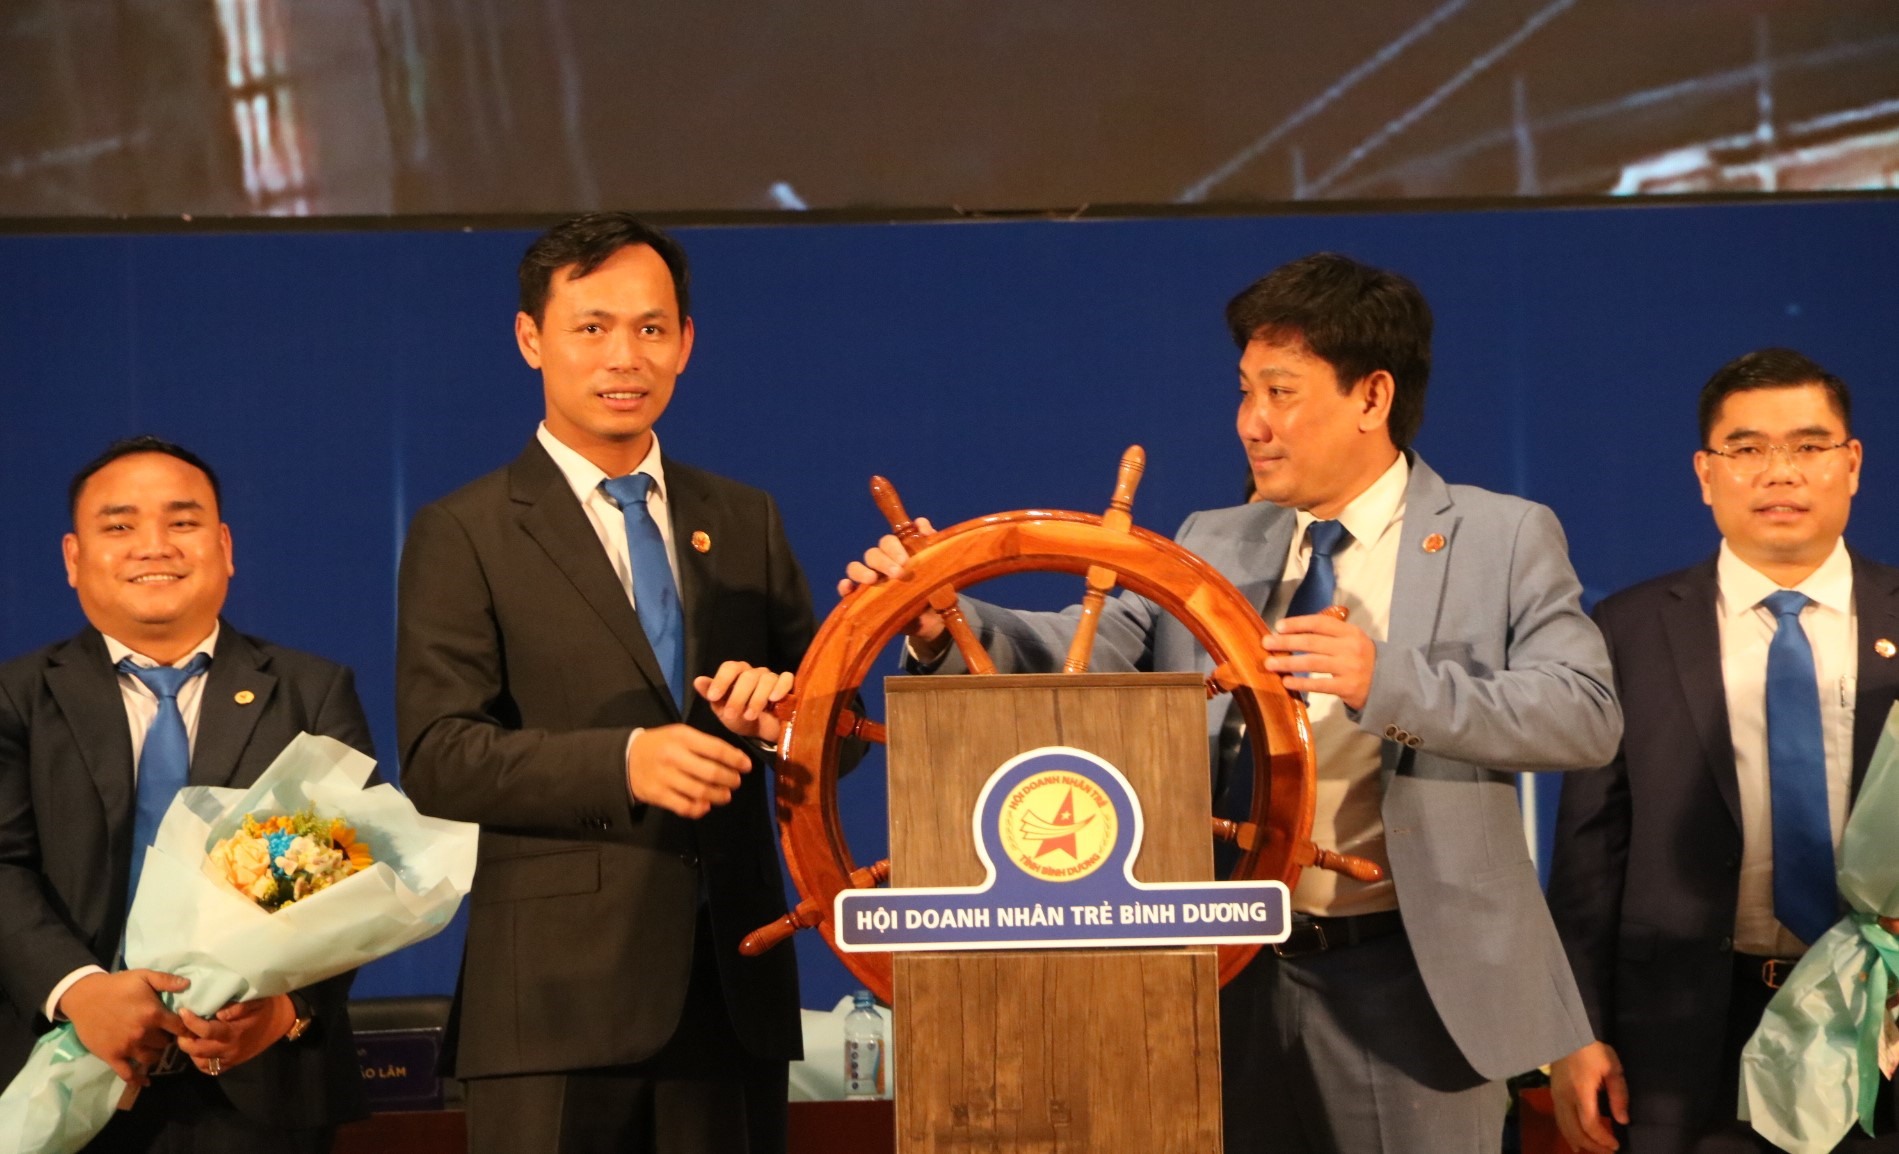 Ông Võ Sơn Điền (bìa phải) và ông Huỳnh Trần Phi Long (bìa trái) trên biểu tượng bánh lái con thuyền Hội Doanh nhân trẻ Bình Dương. Ảnh: Đình Trọng